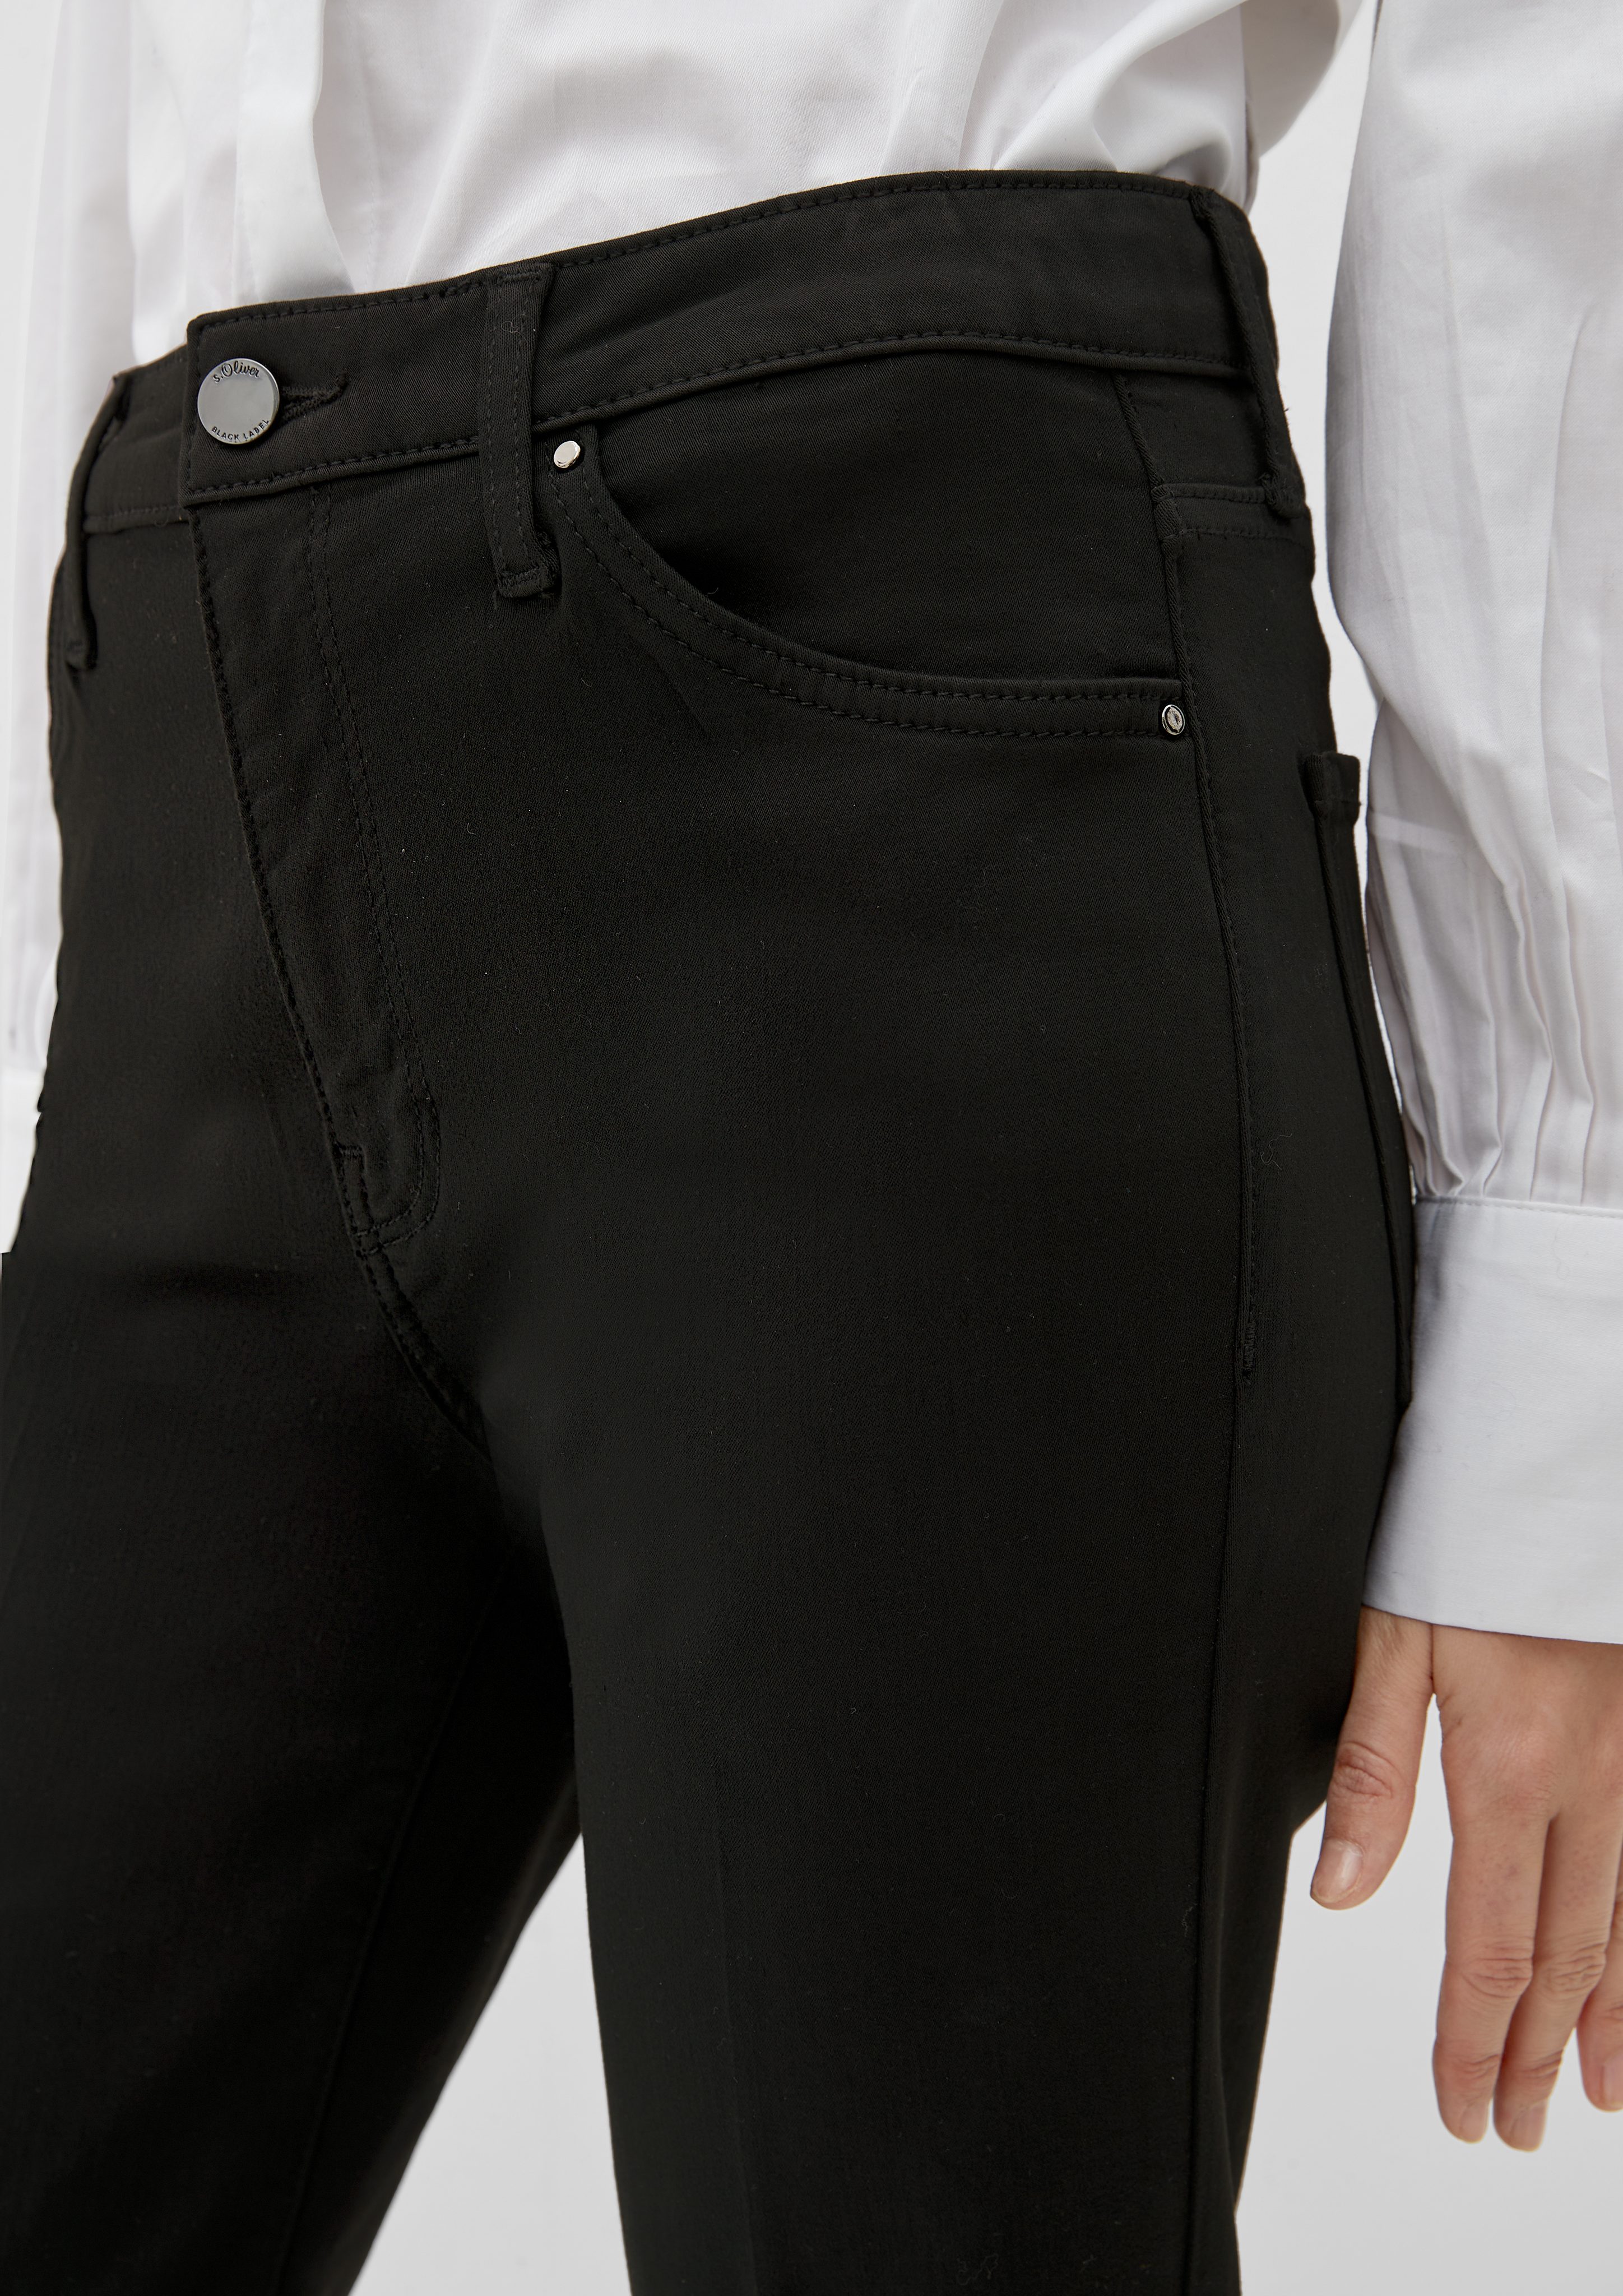 Jeans / Regular BLACK / Flared 5-Pocket-Jeans LABEL Rise s.Oliver / Fit High Leg